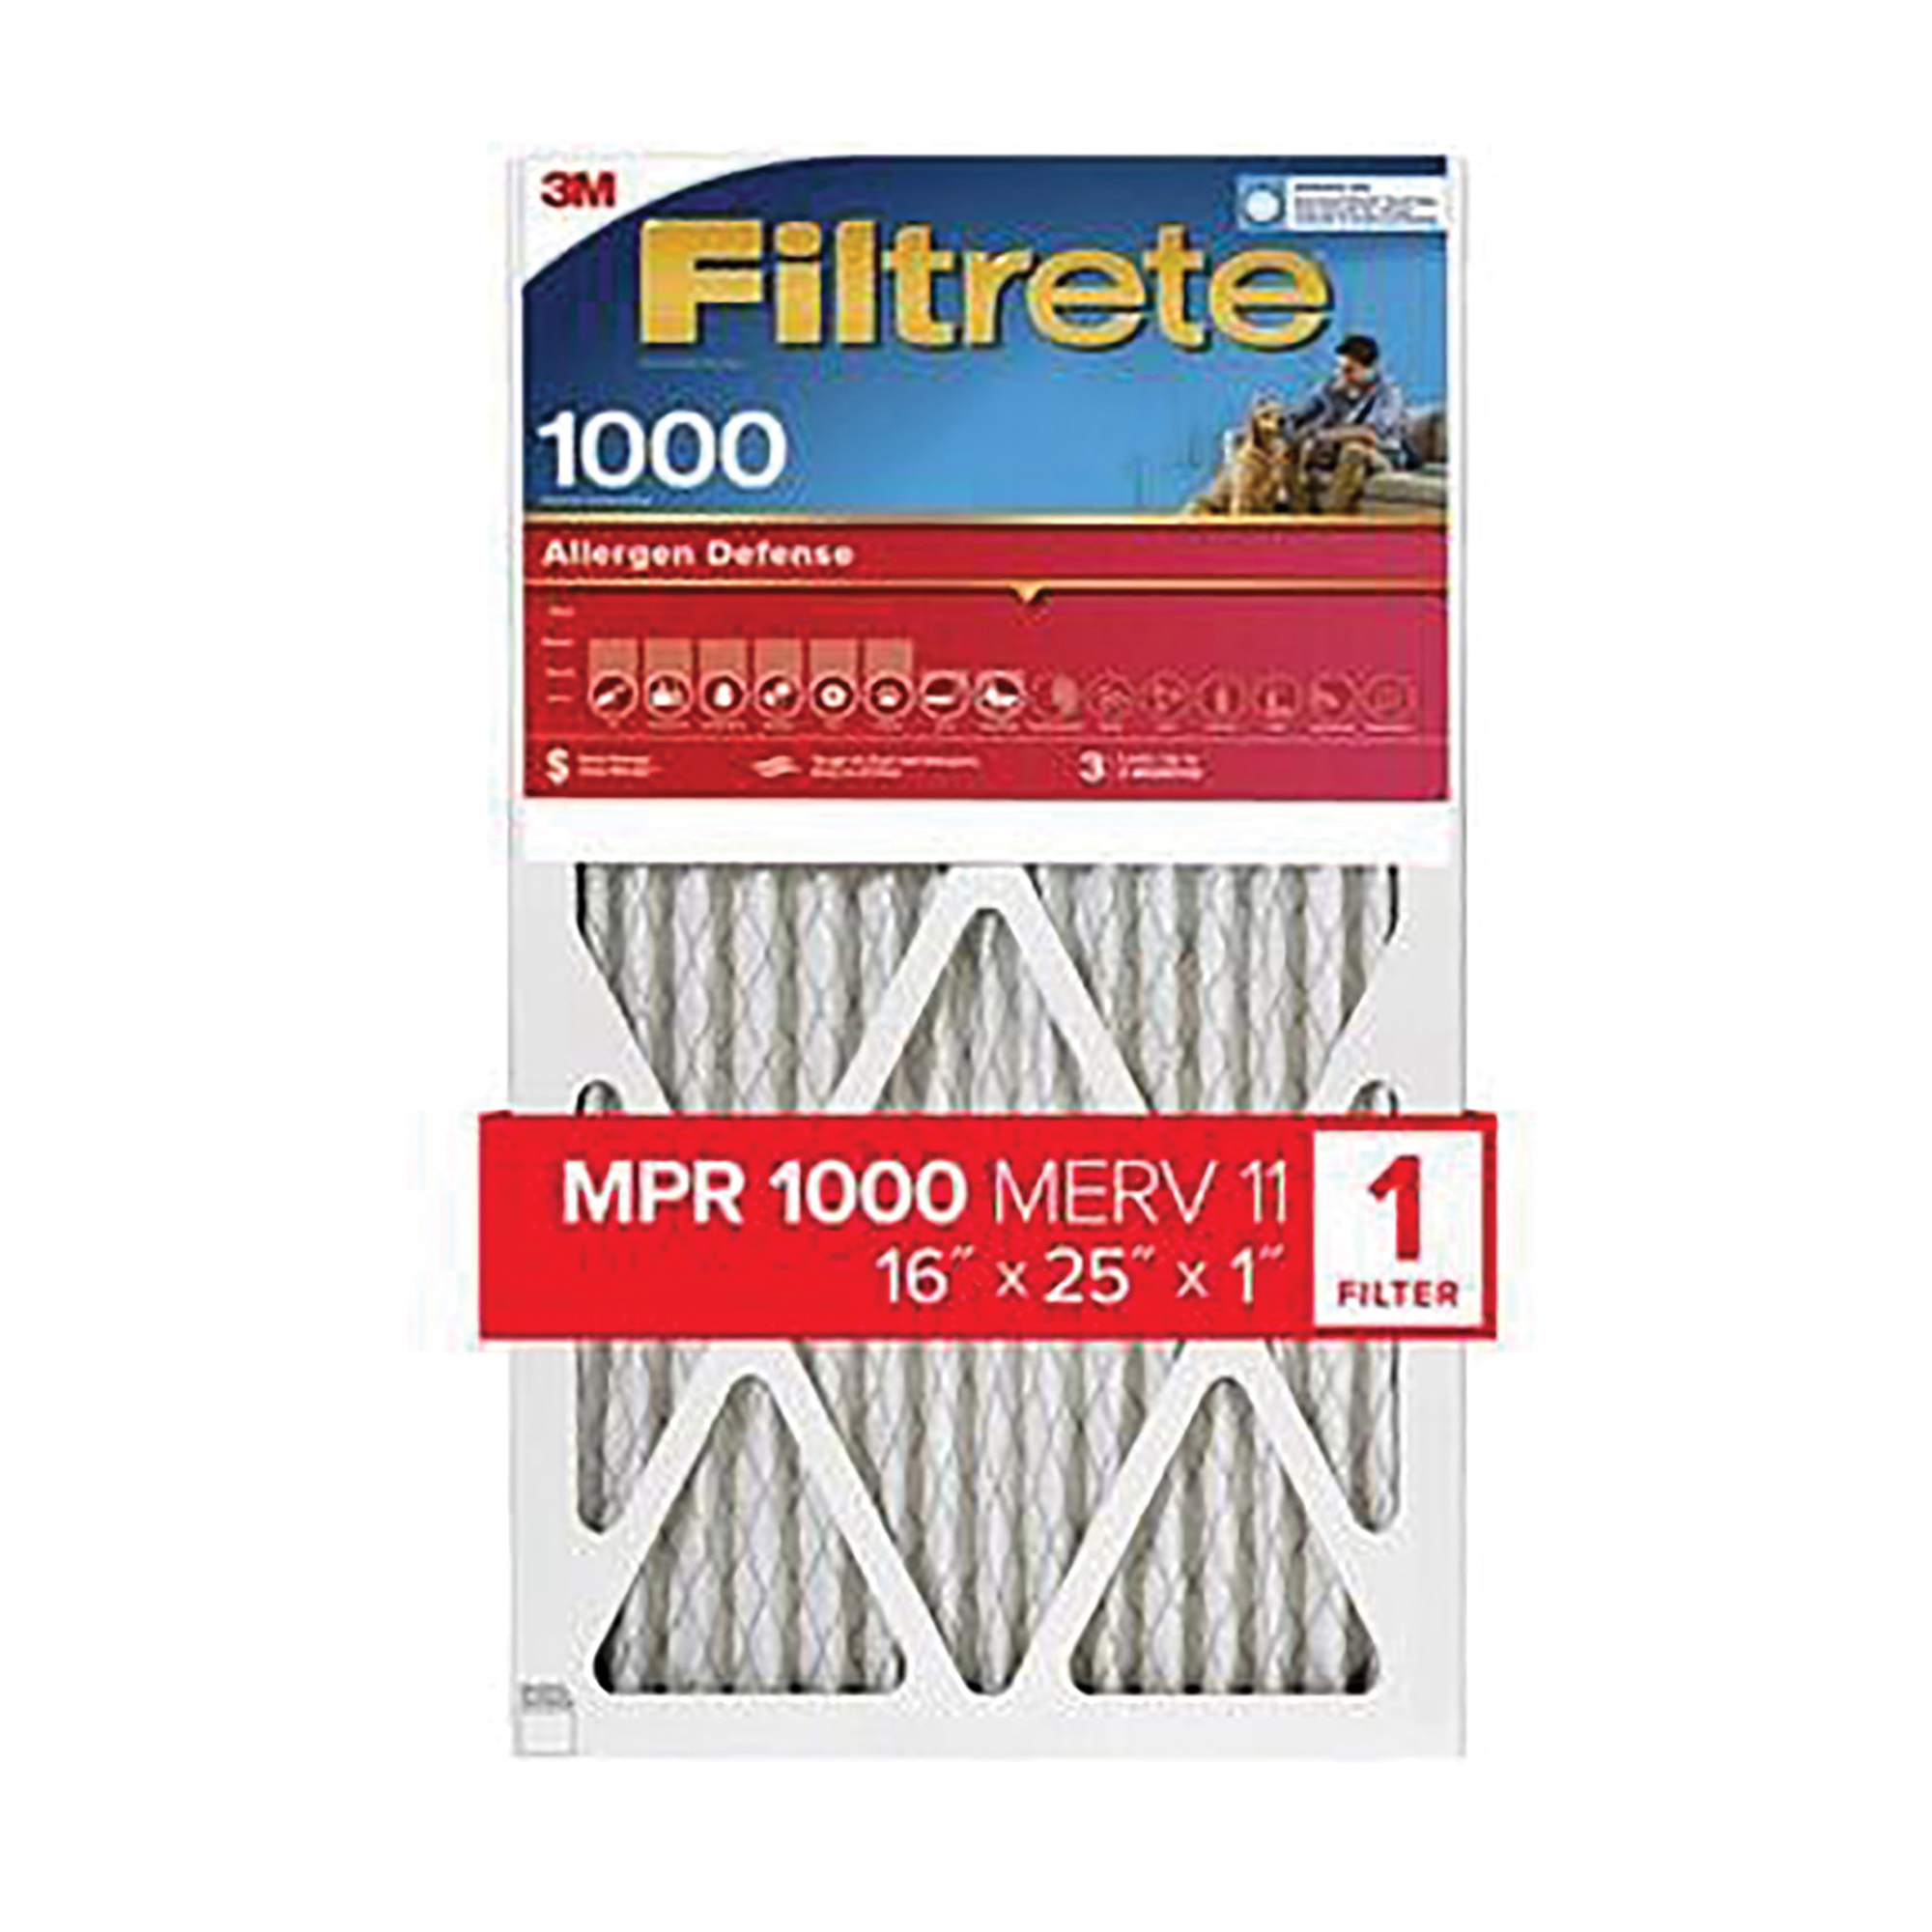 9801-4 Air Filter, 25 x 16 x 1, 11 MERV, 1000 MPR